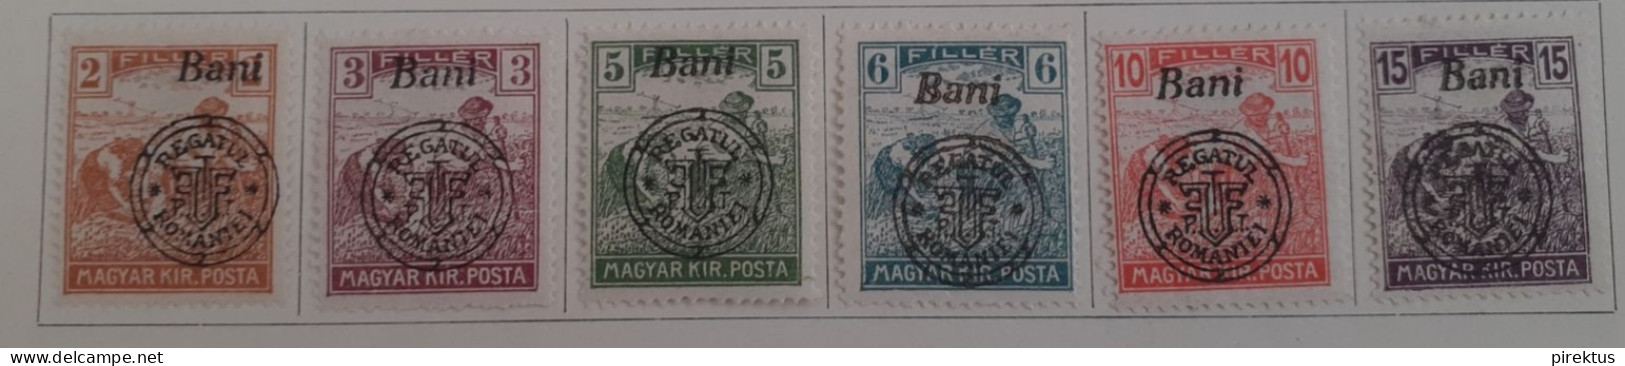 Romania 1916-1920 Stamps Lot - Siebenbürgen (Transsylvanien)